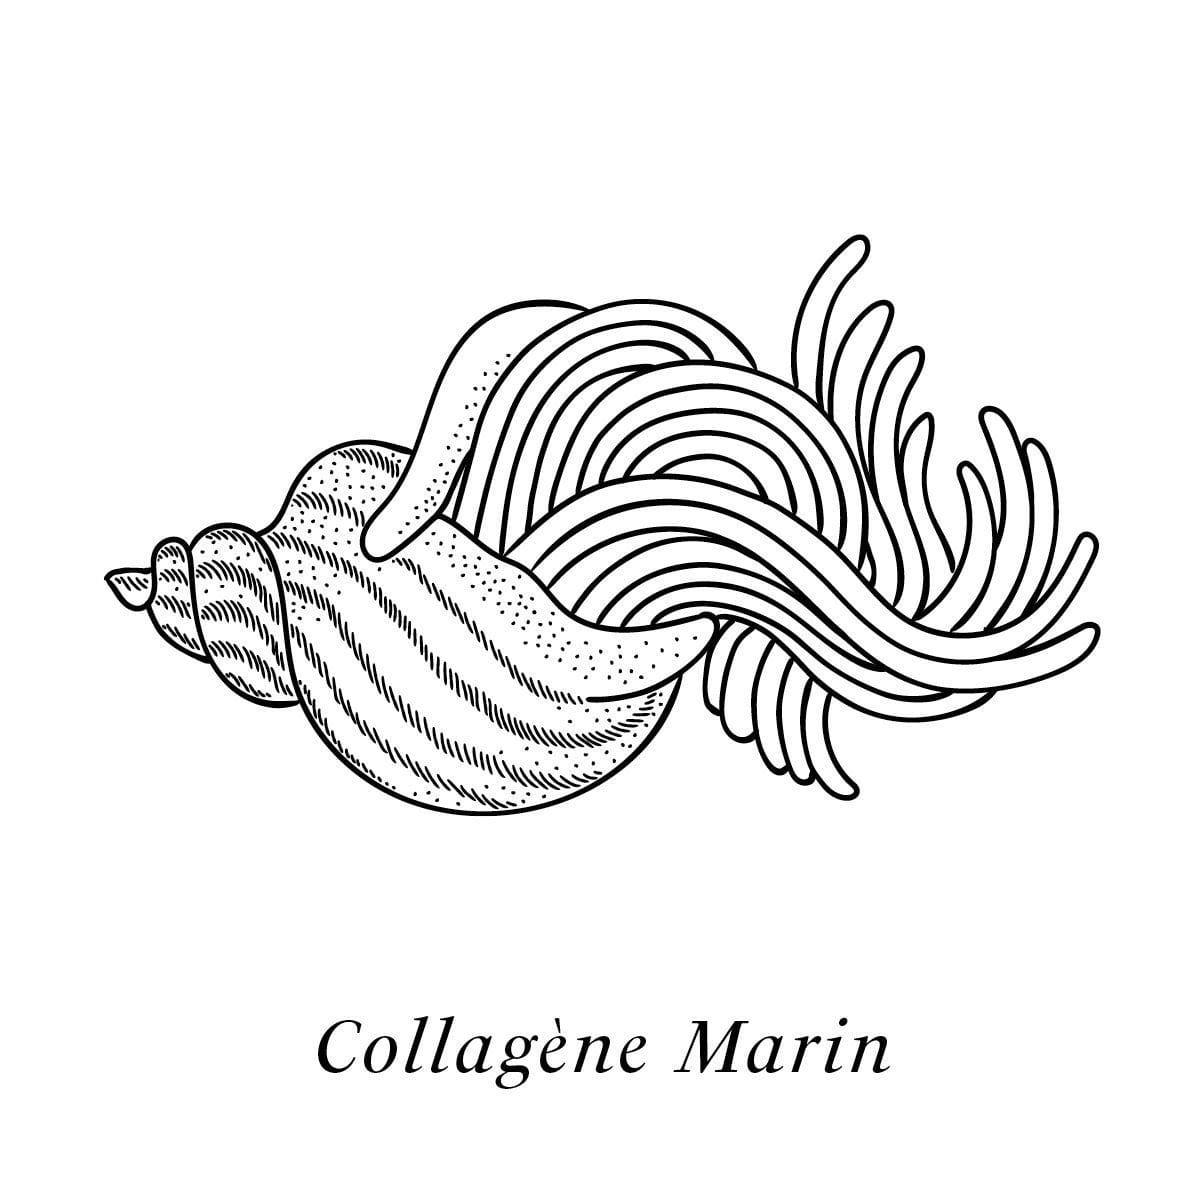 Illustration du collagène marin, actif de la crème Claudius N°1 agissant sur le vieillissement de la peau, design ichetkar